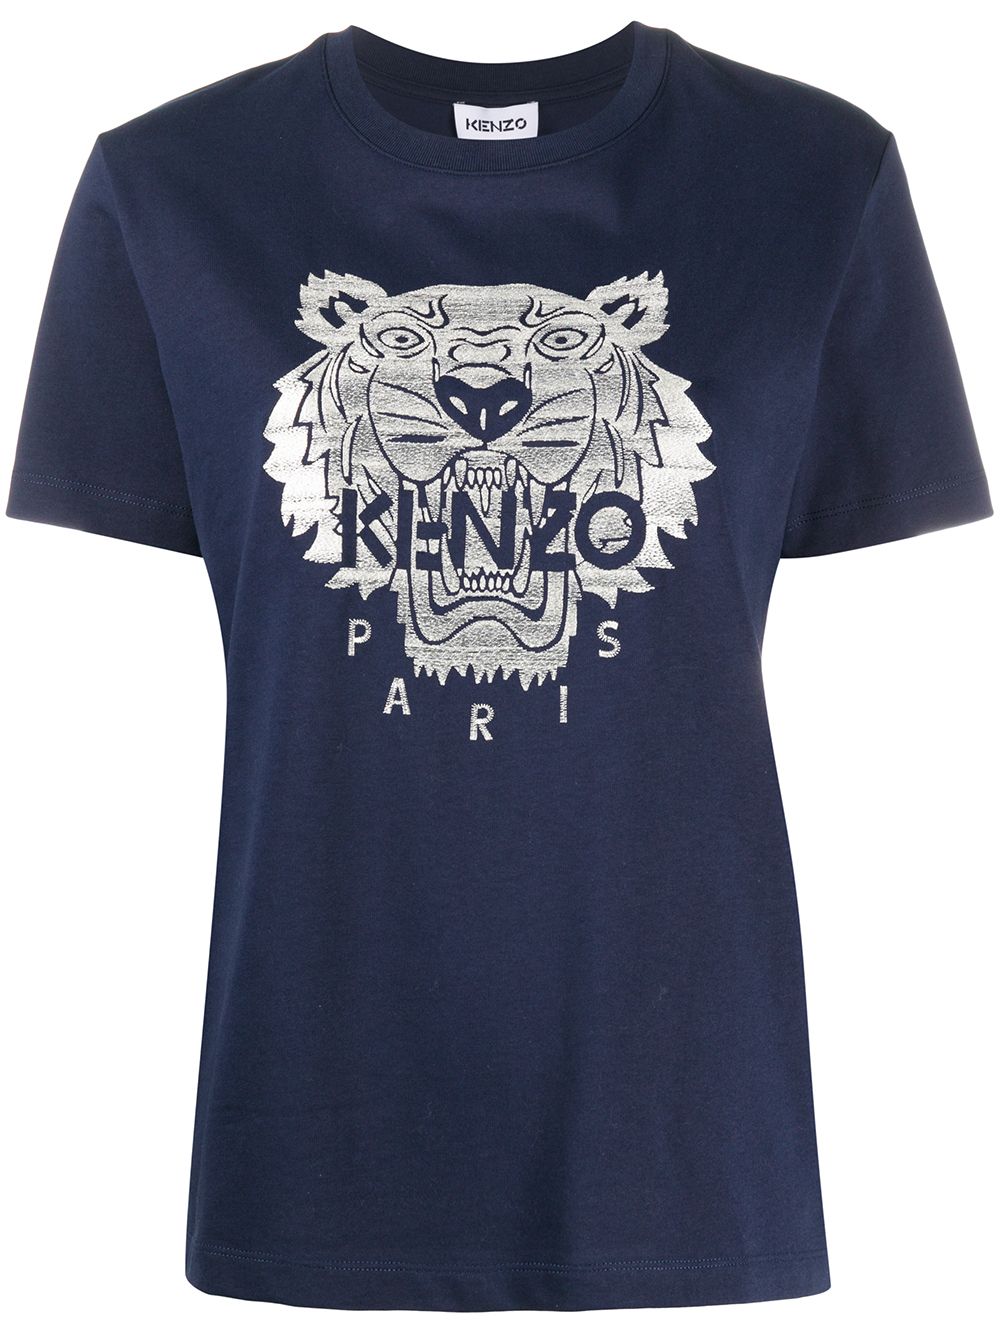 фото Kenzo футболка с вышитым логотипом